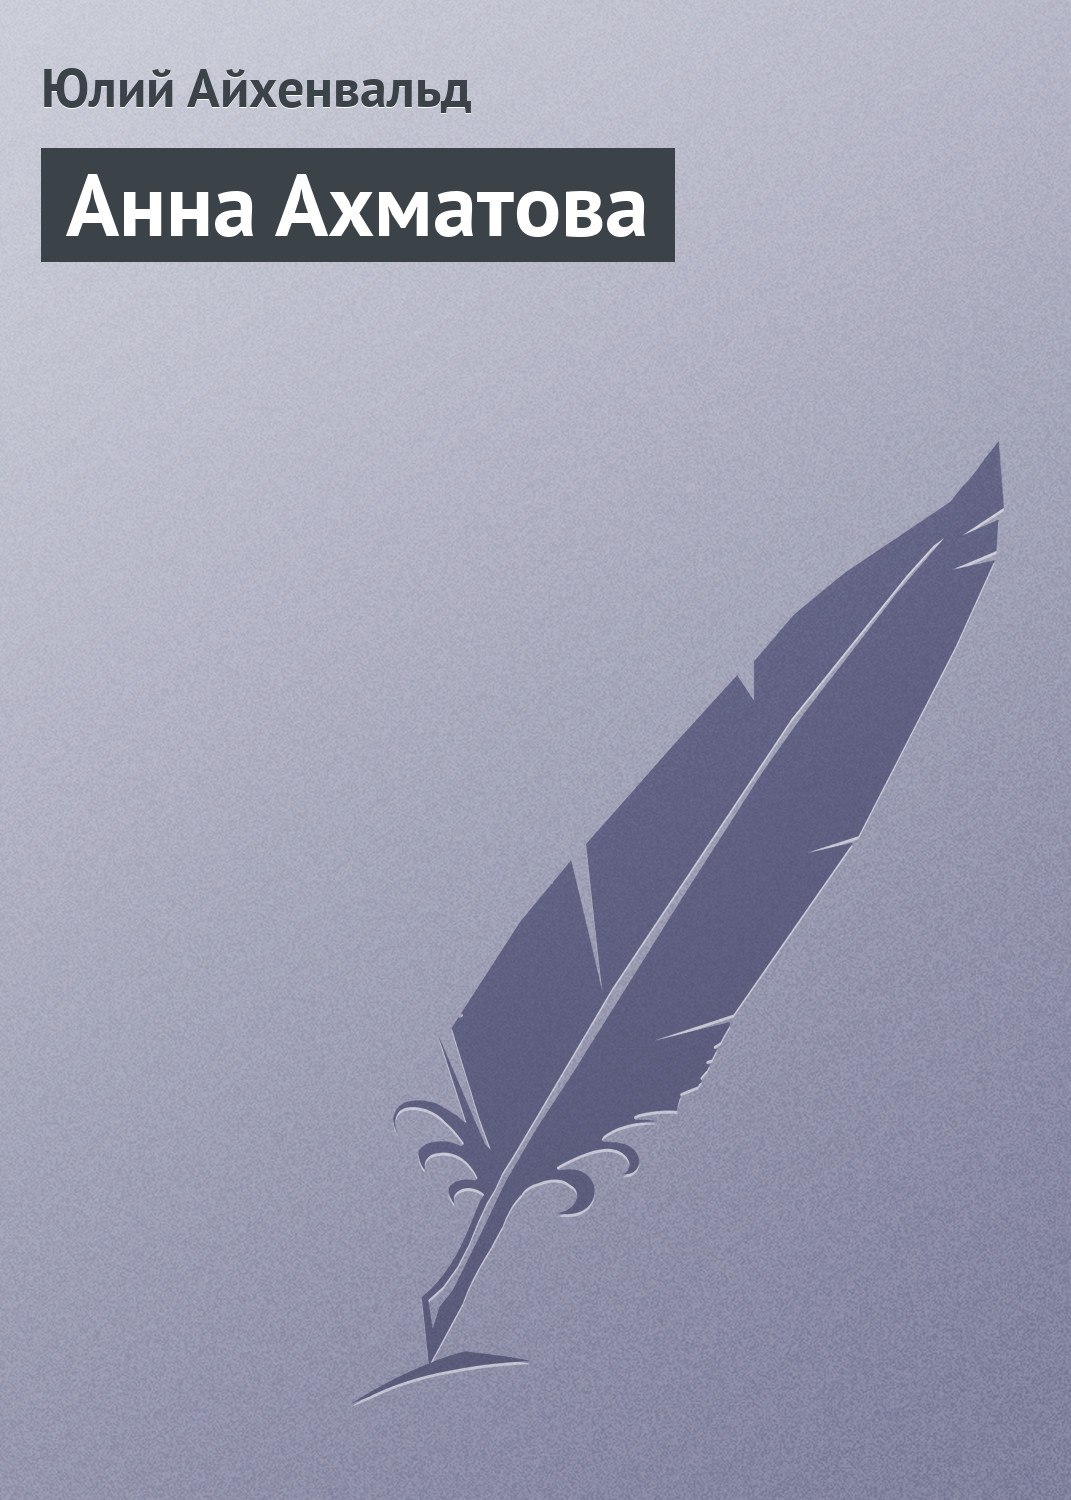 Книга Анна Ахматова из серии , созданная Юлий Айхенвальд, может относится к жанру Критика. Стоимость книги Анна Ахматова  с идентификатором 2594935 составляет 9.99 руб.